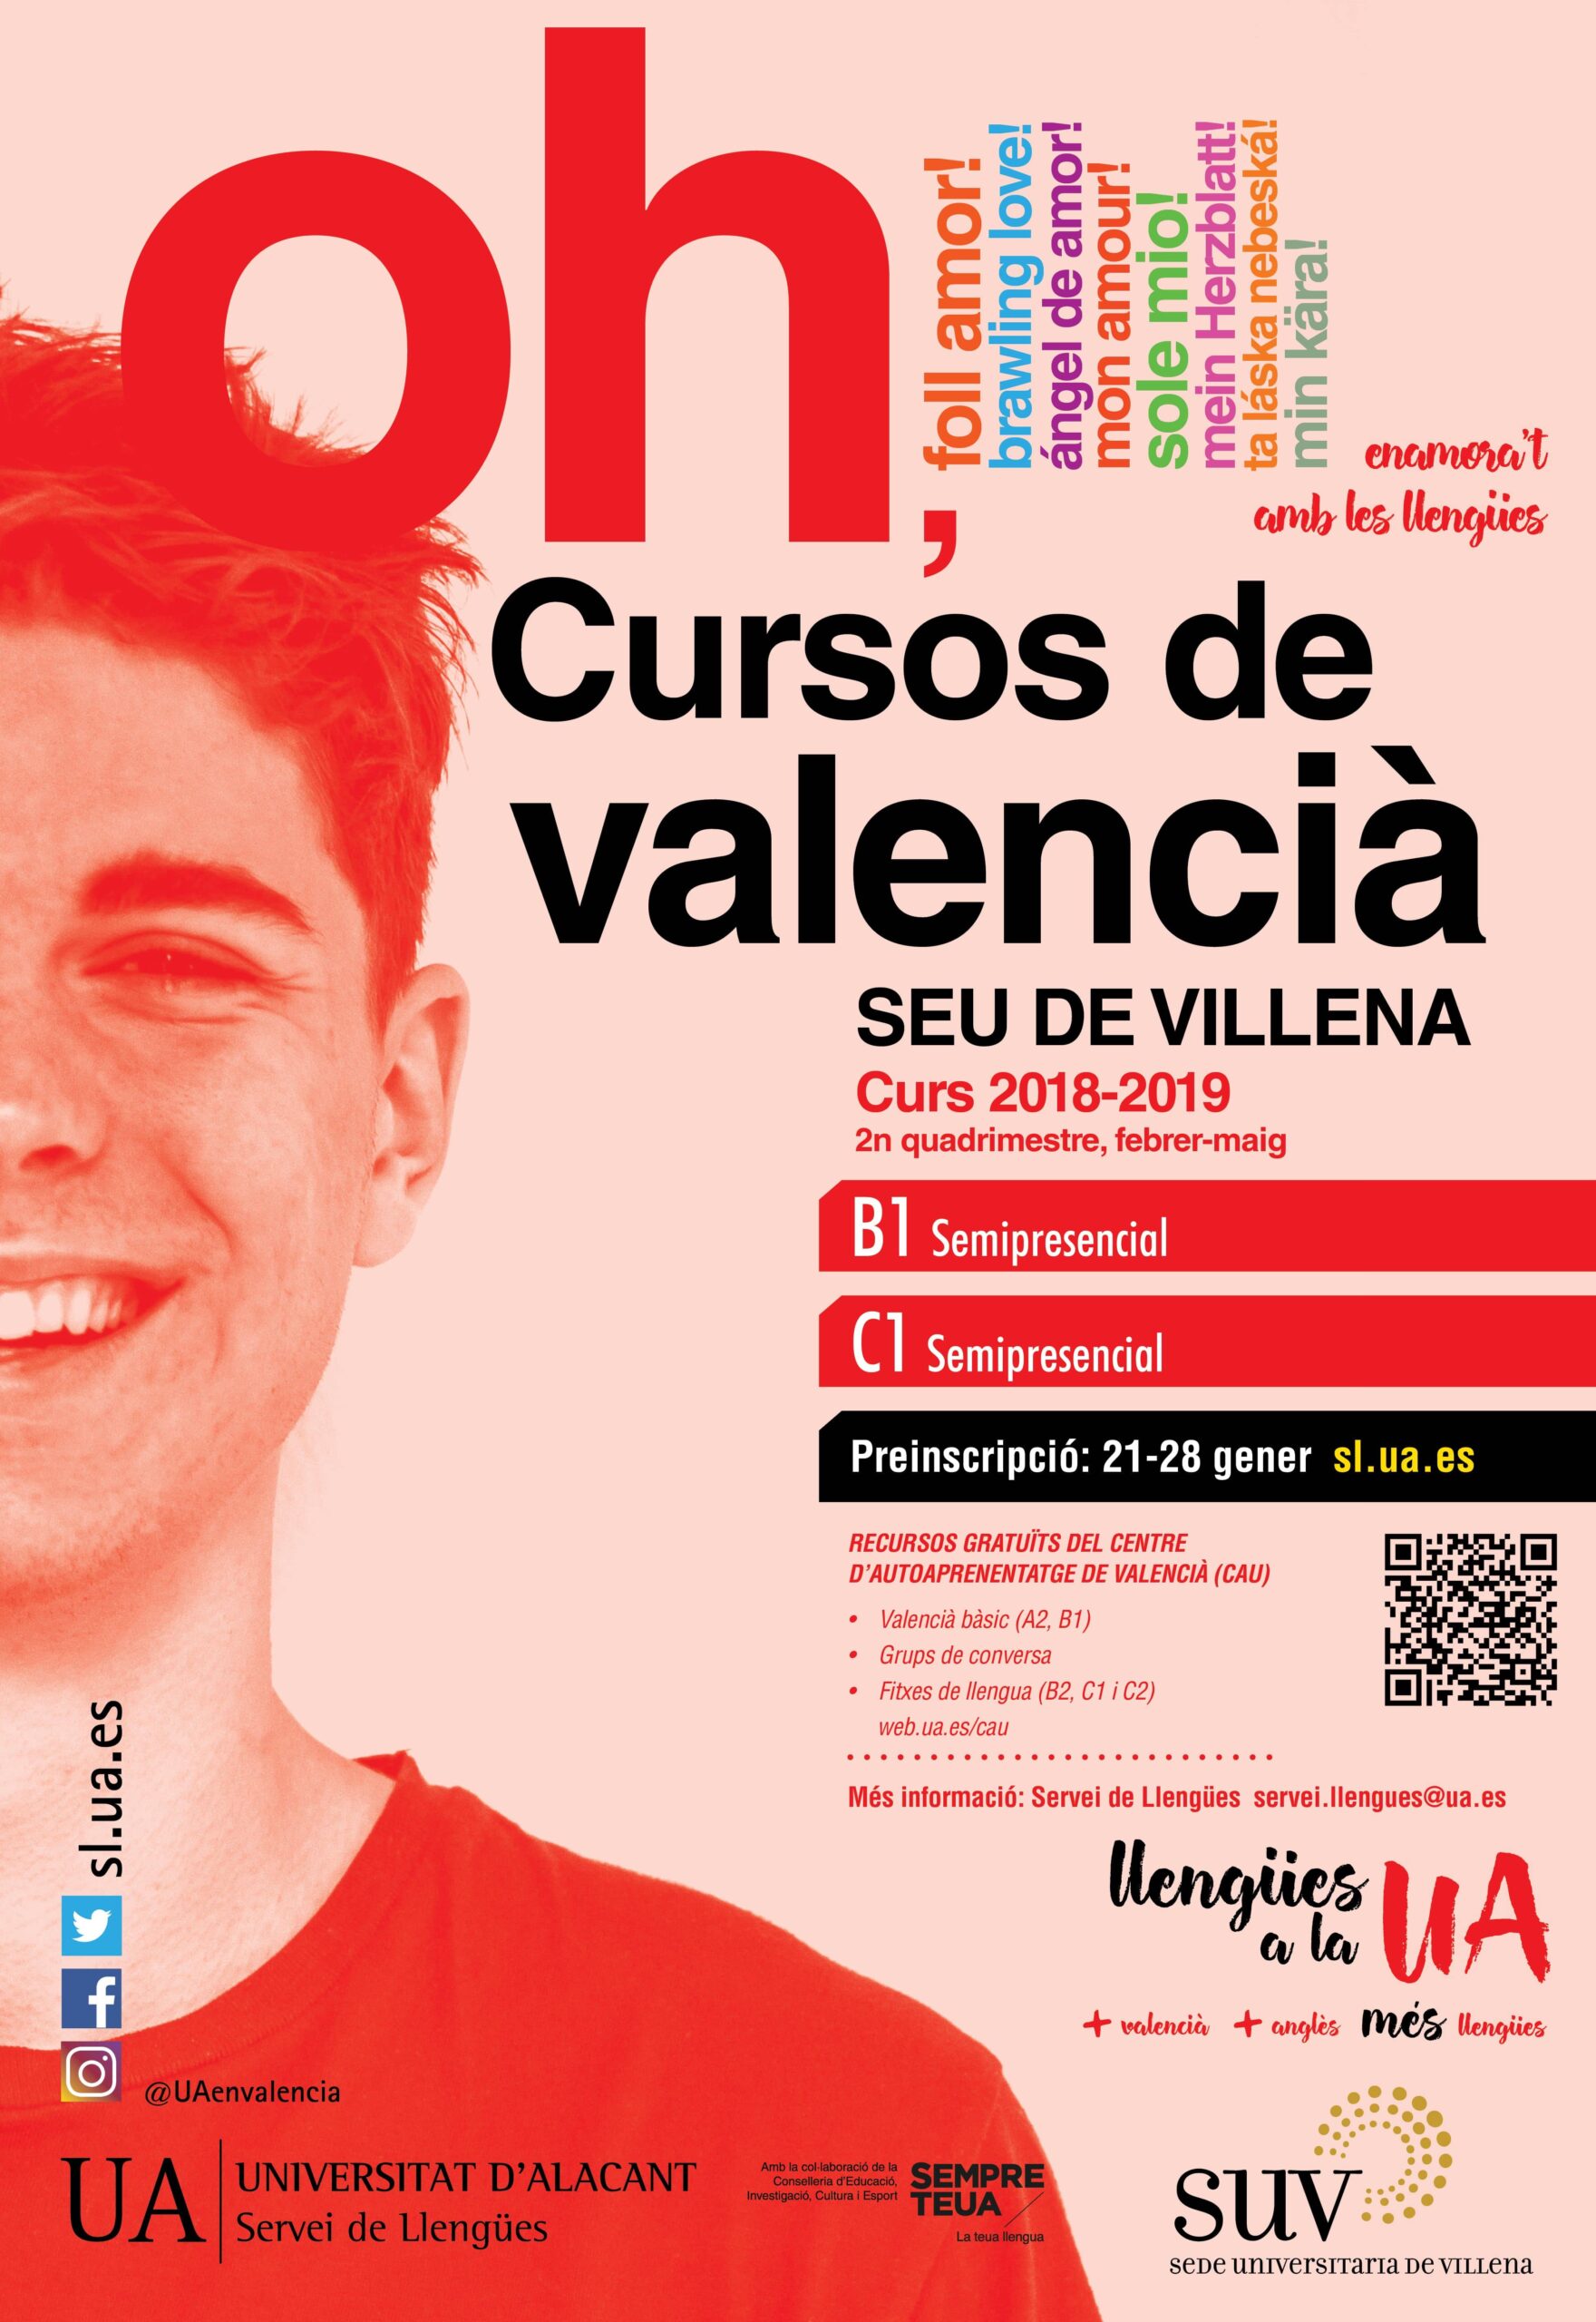 La UA oferta nuevos cursos de valenciano en la sede de Villena